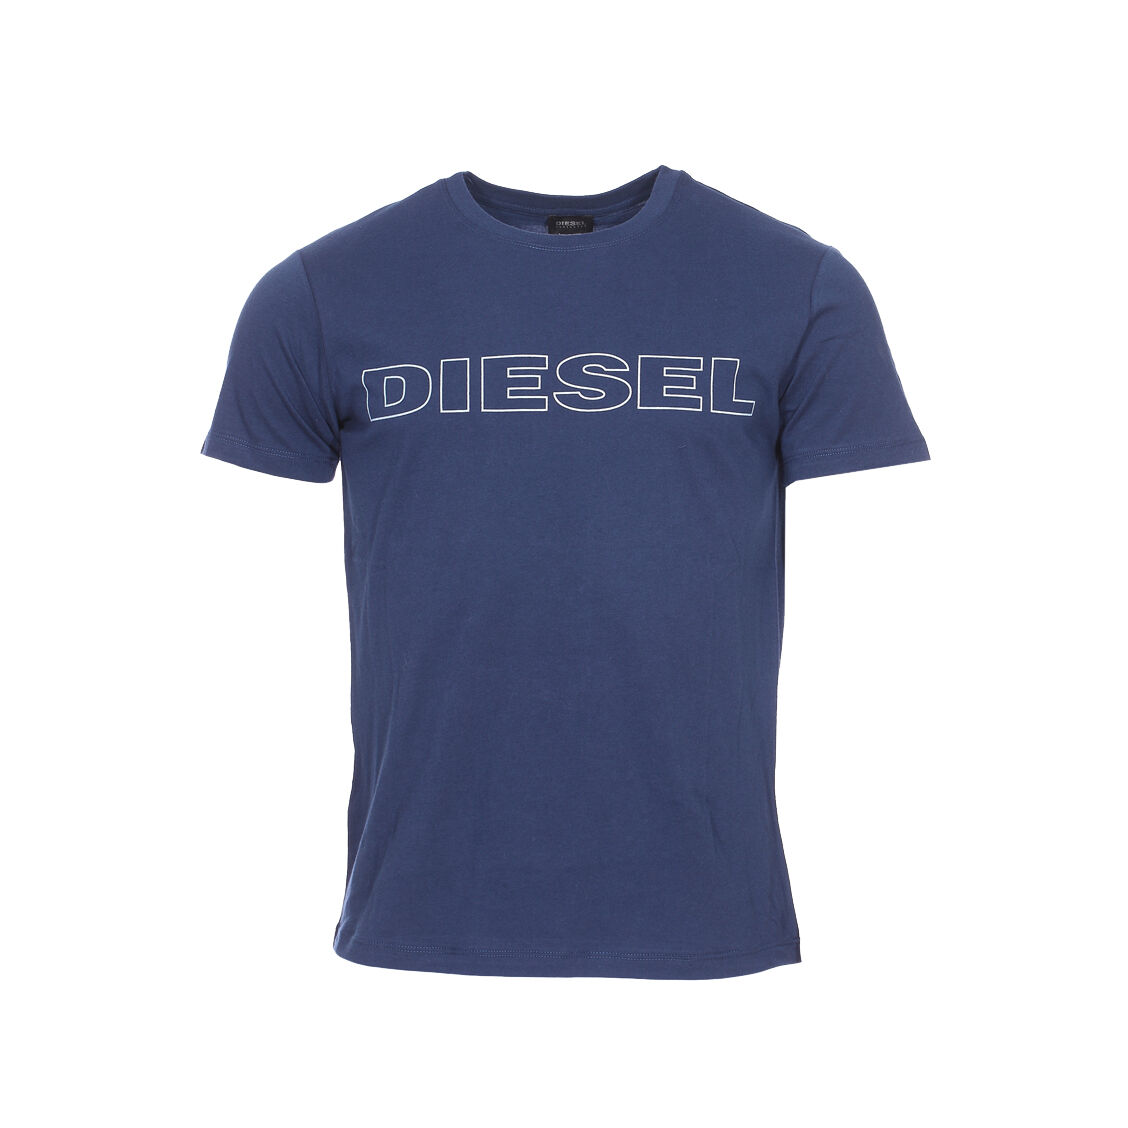 Diesel Underwear Tee-shirt col rond Diesel Jake en coton bleu marine floqué - BLEU - XXL